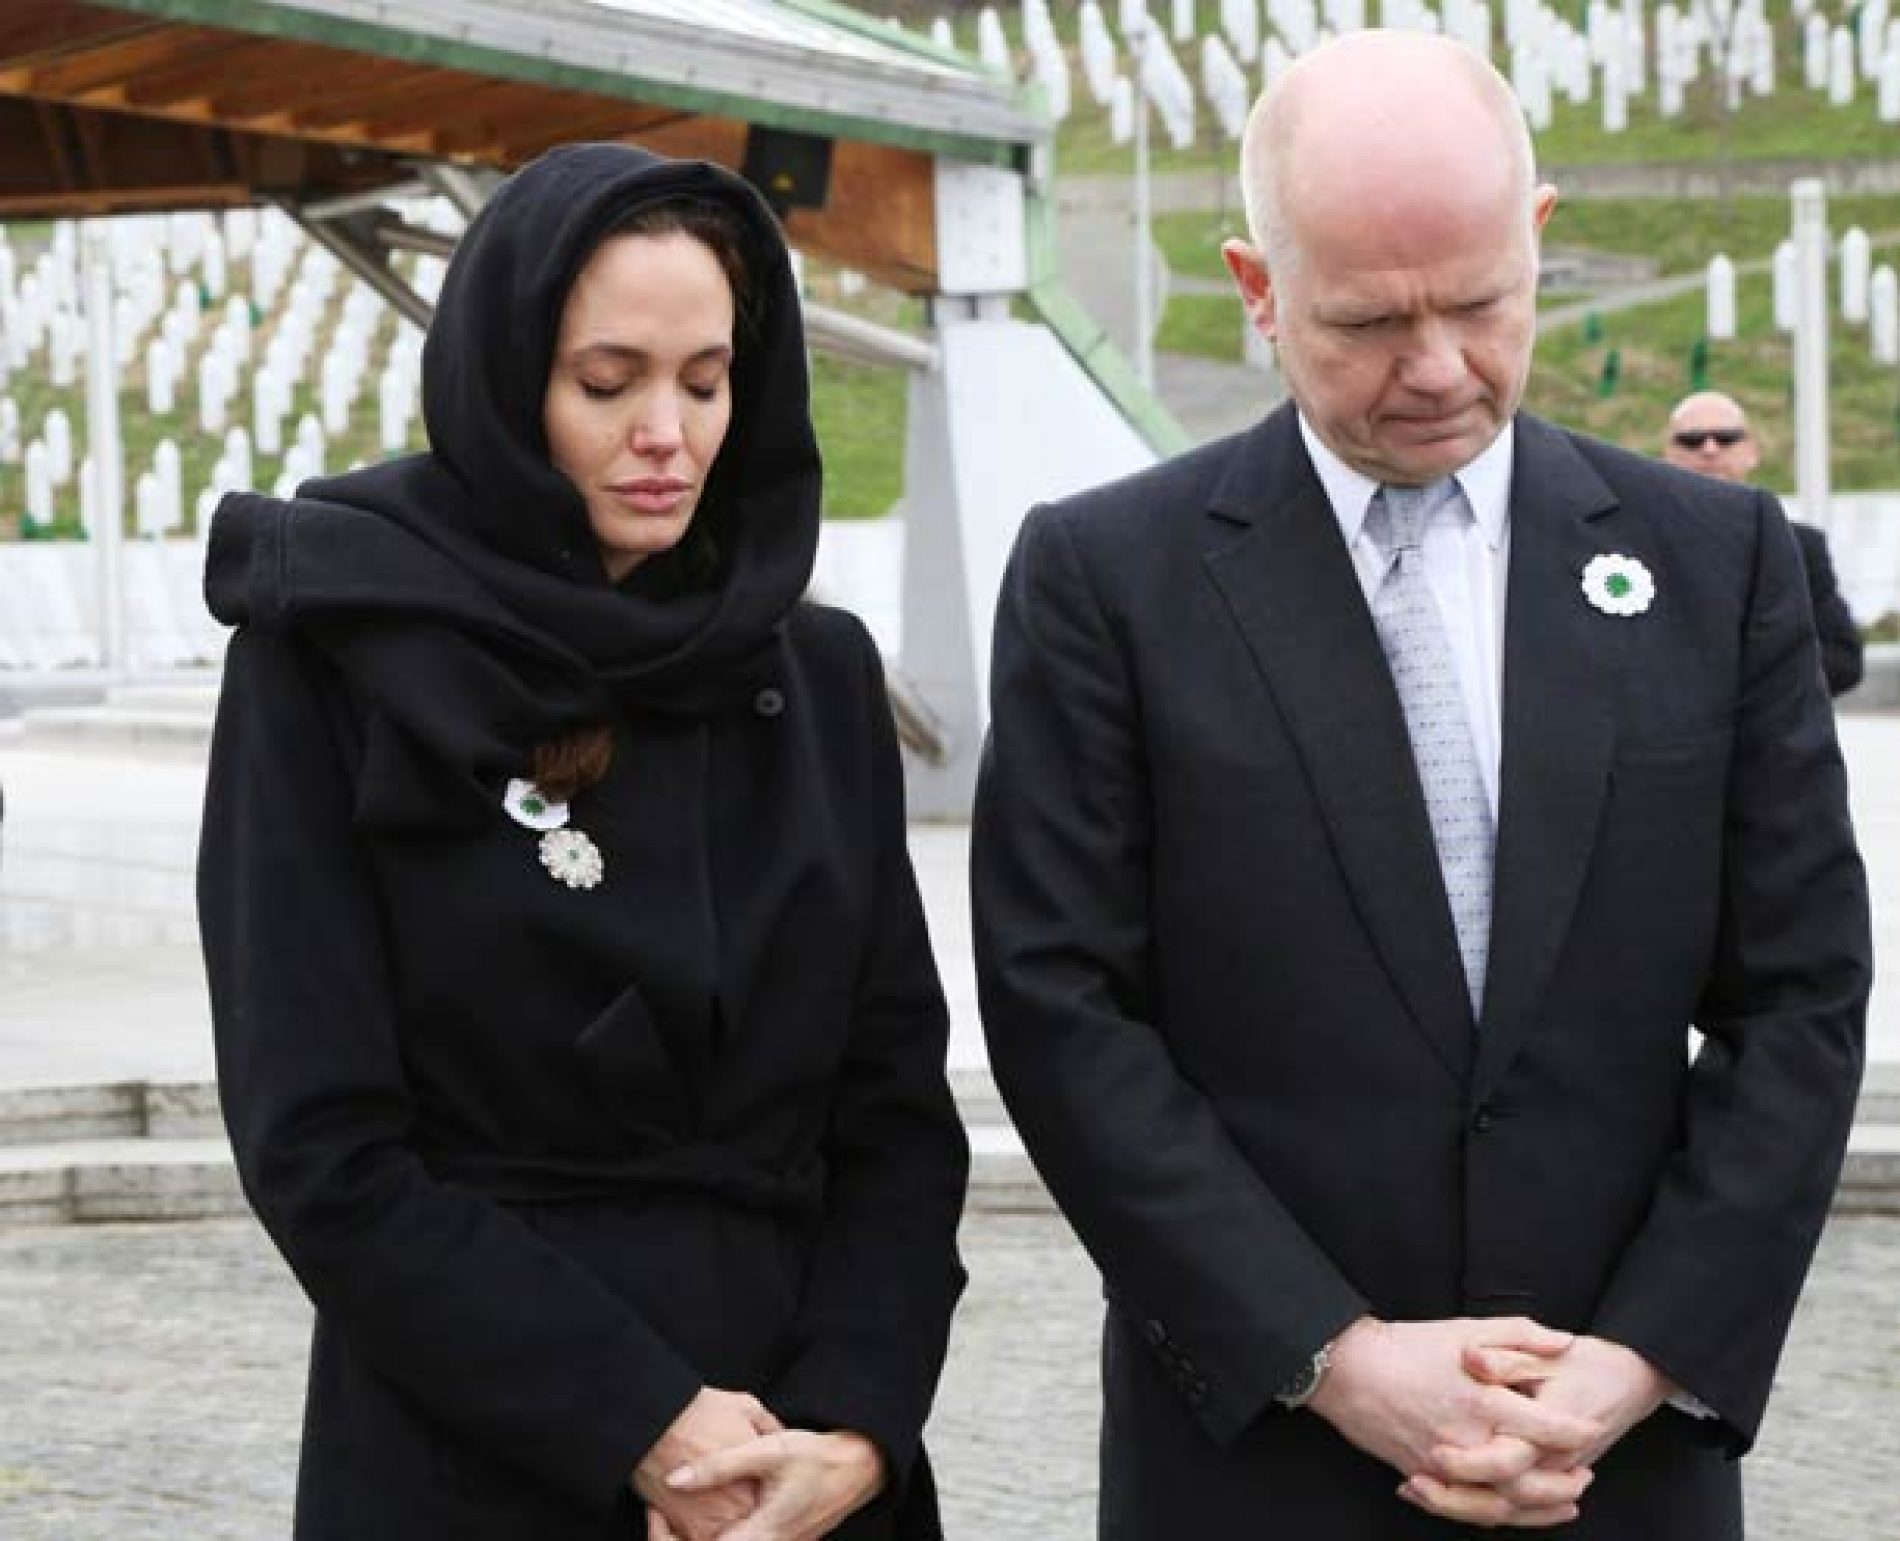 Jolie uputila snažnu poruku ljudima u Bosni i Hercegovini, posebno majkama Srebrenice